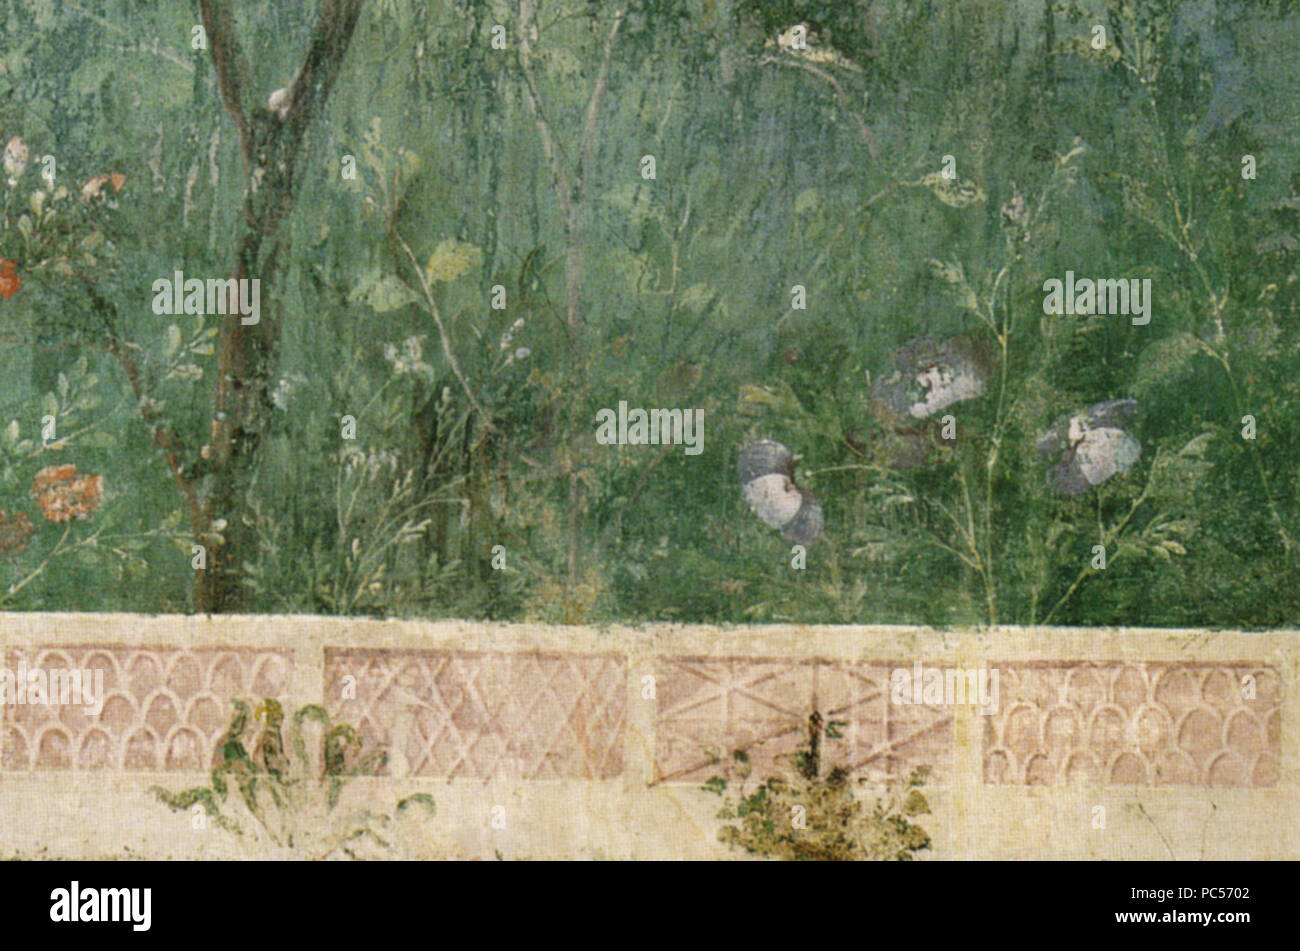 633 Villa di livia, affreschi di giardino, parete corta meridionale, fiori 02 Stock Photo